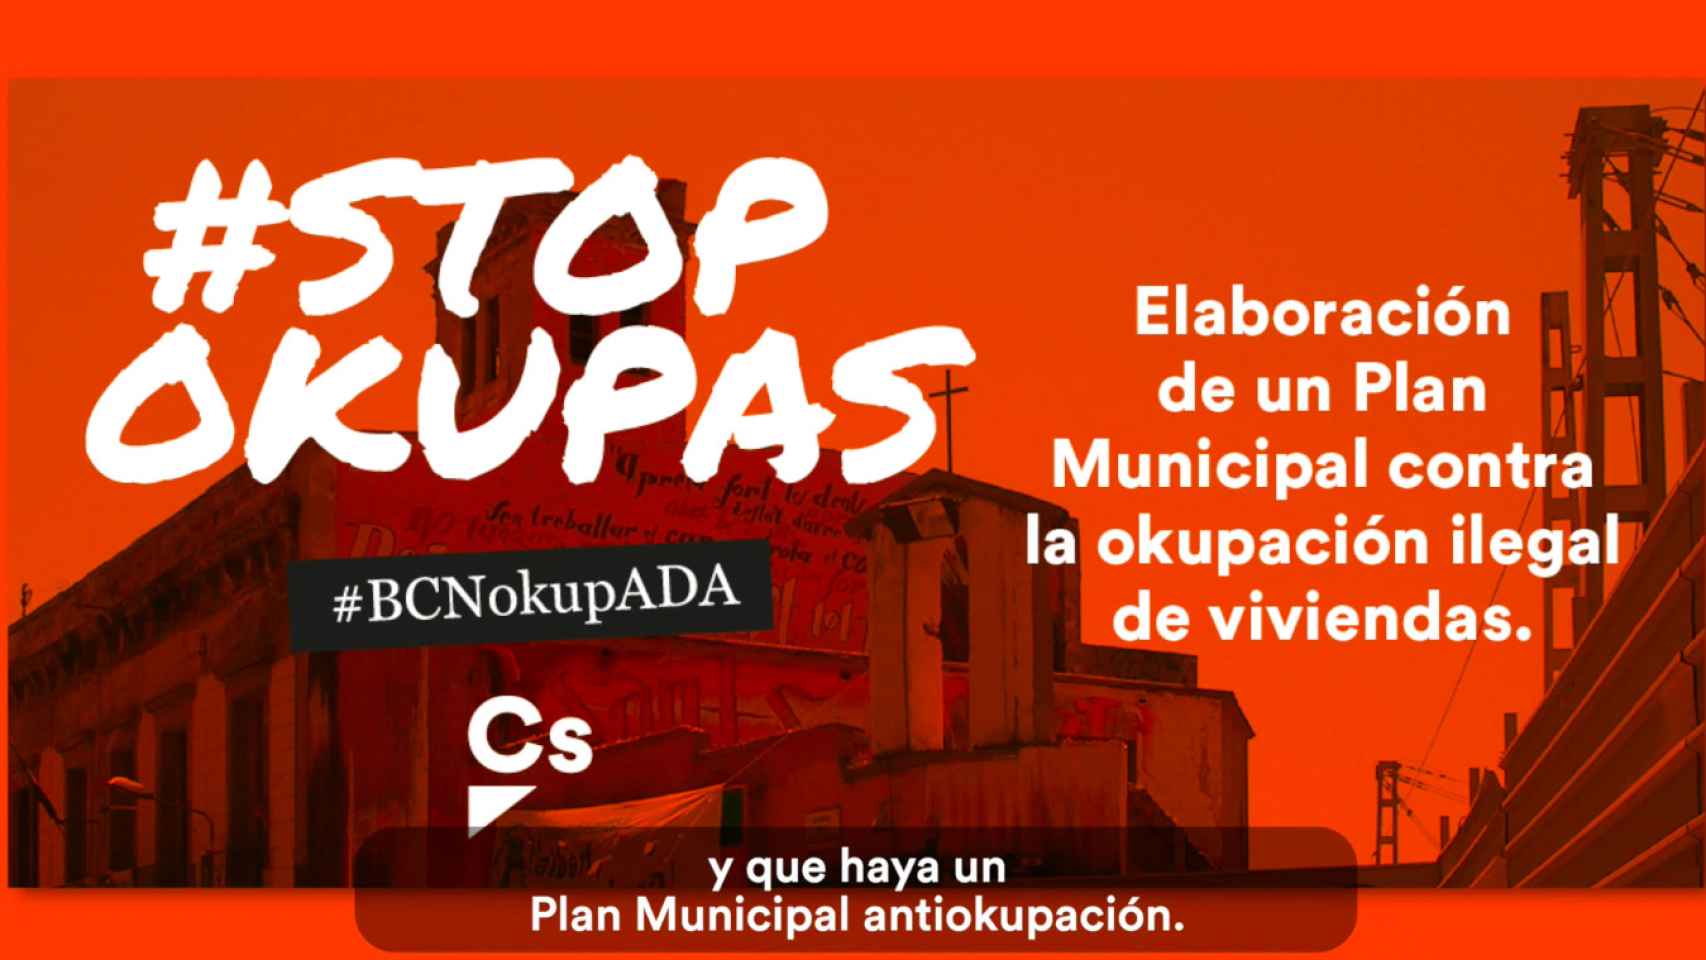 Campaña de Ciutadans antiokupas / CIUTADANS